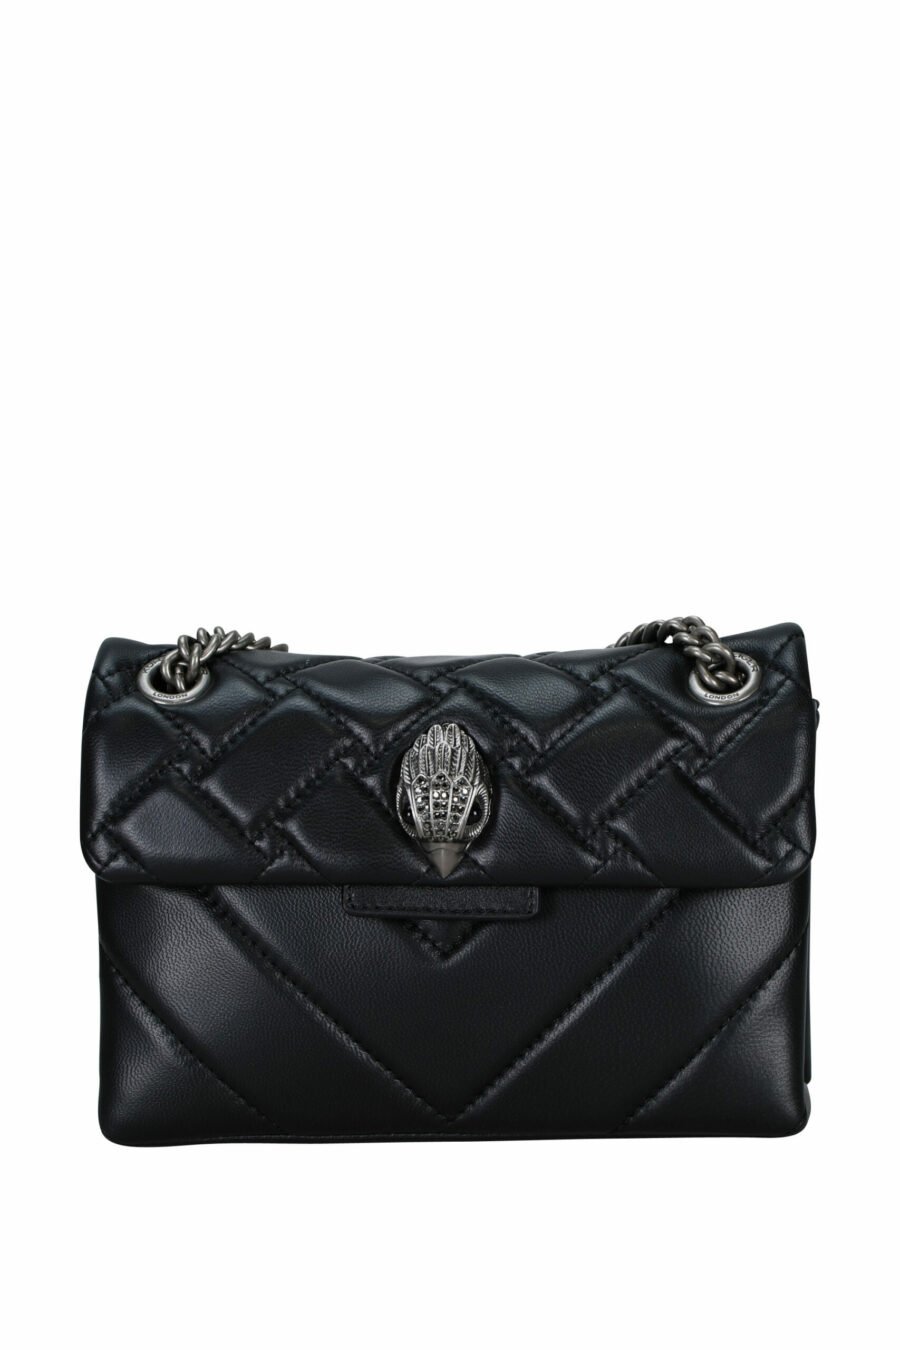 Mini sac à bandoulière matelassé noir avec logo aigle argenté avec cristaux noirs - 5045065997525 scaled